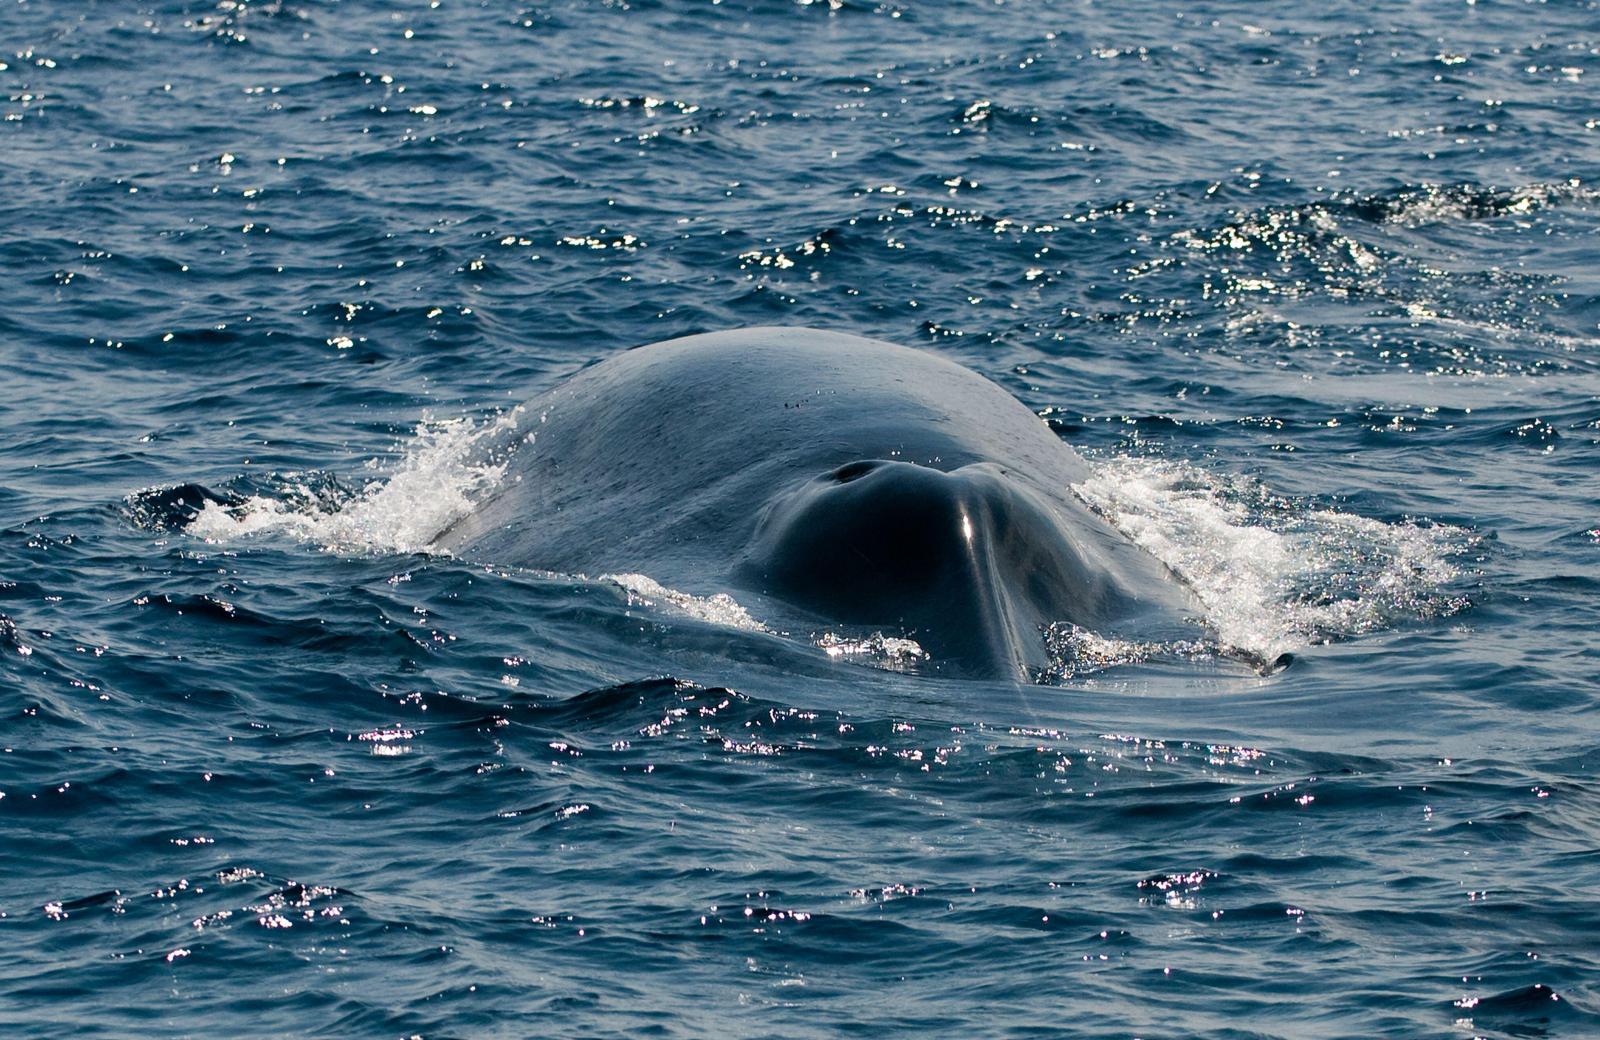 Камчатка, Сахалин и не только: где можно увидеть китов в России - image 1